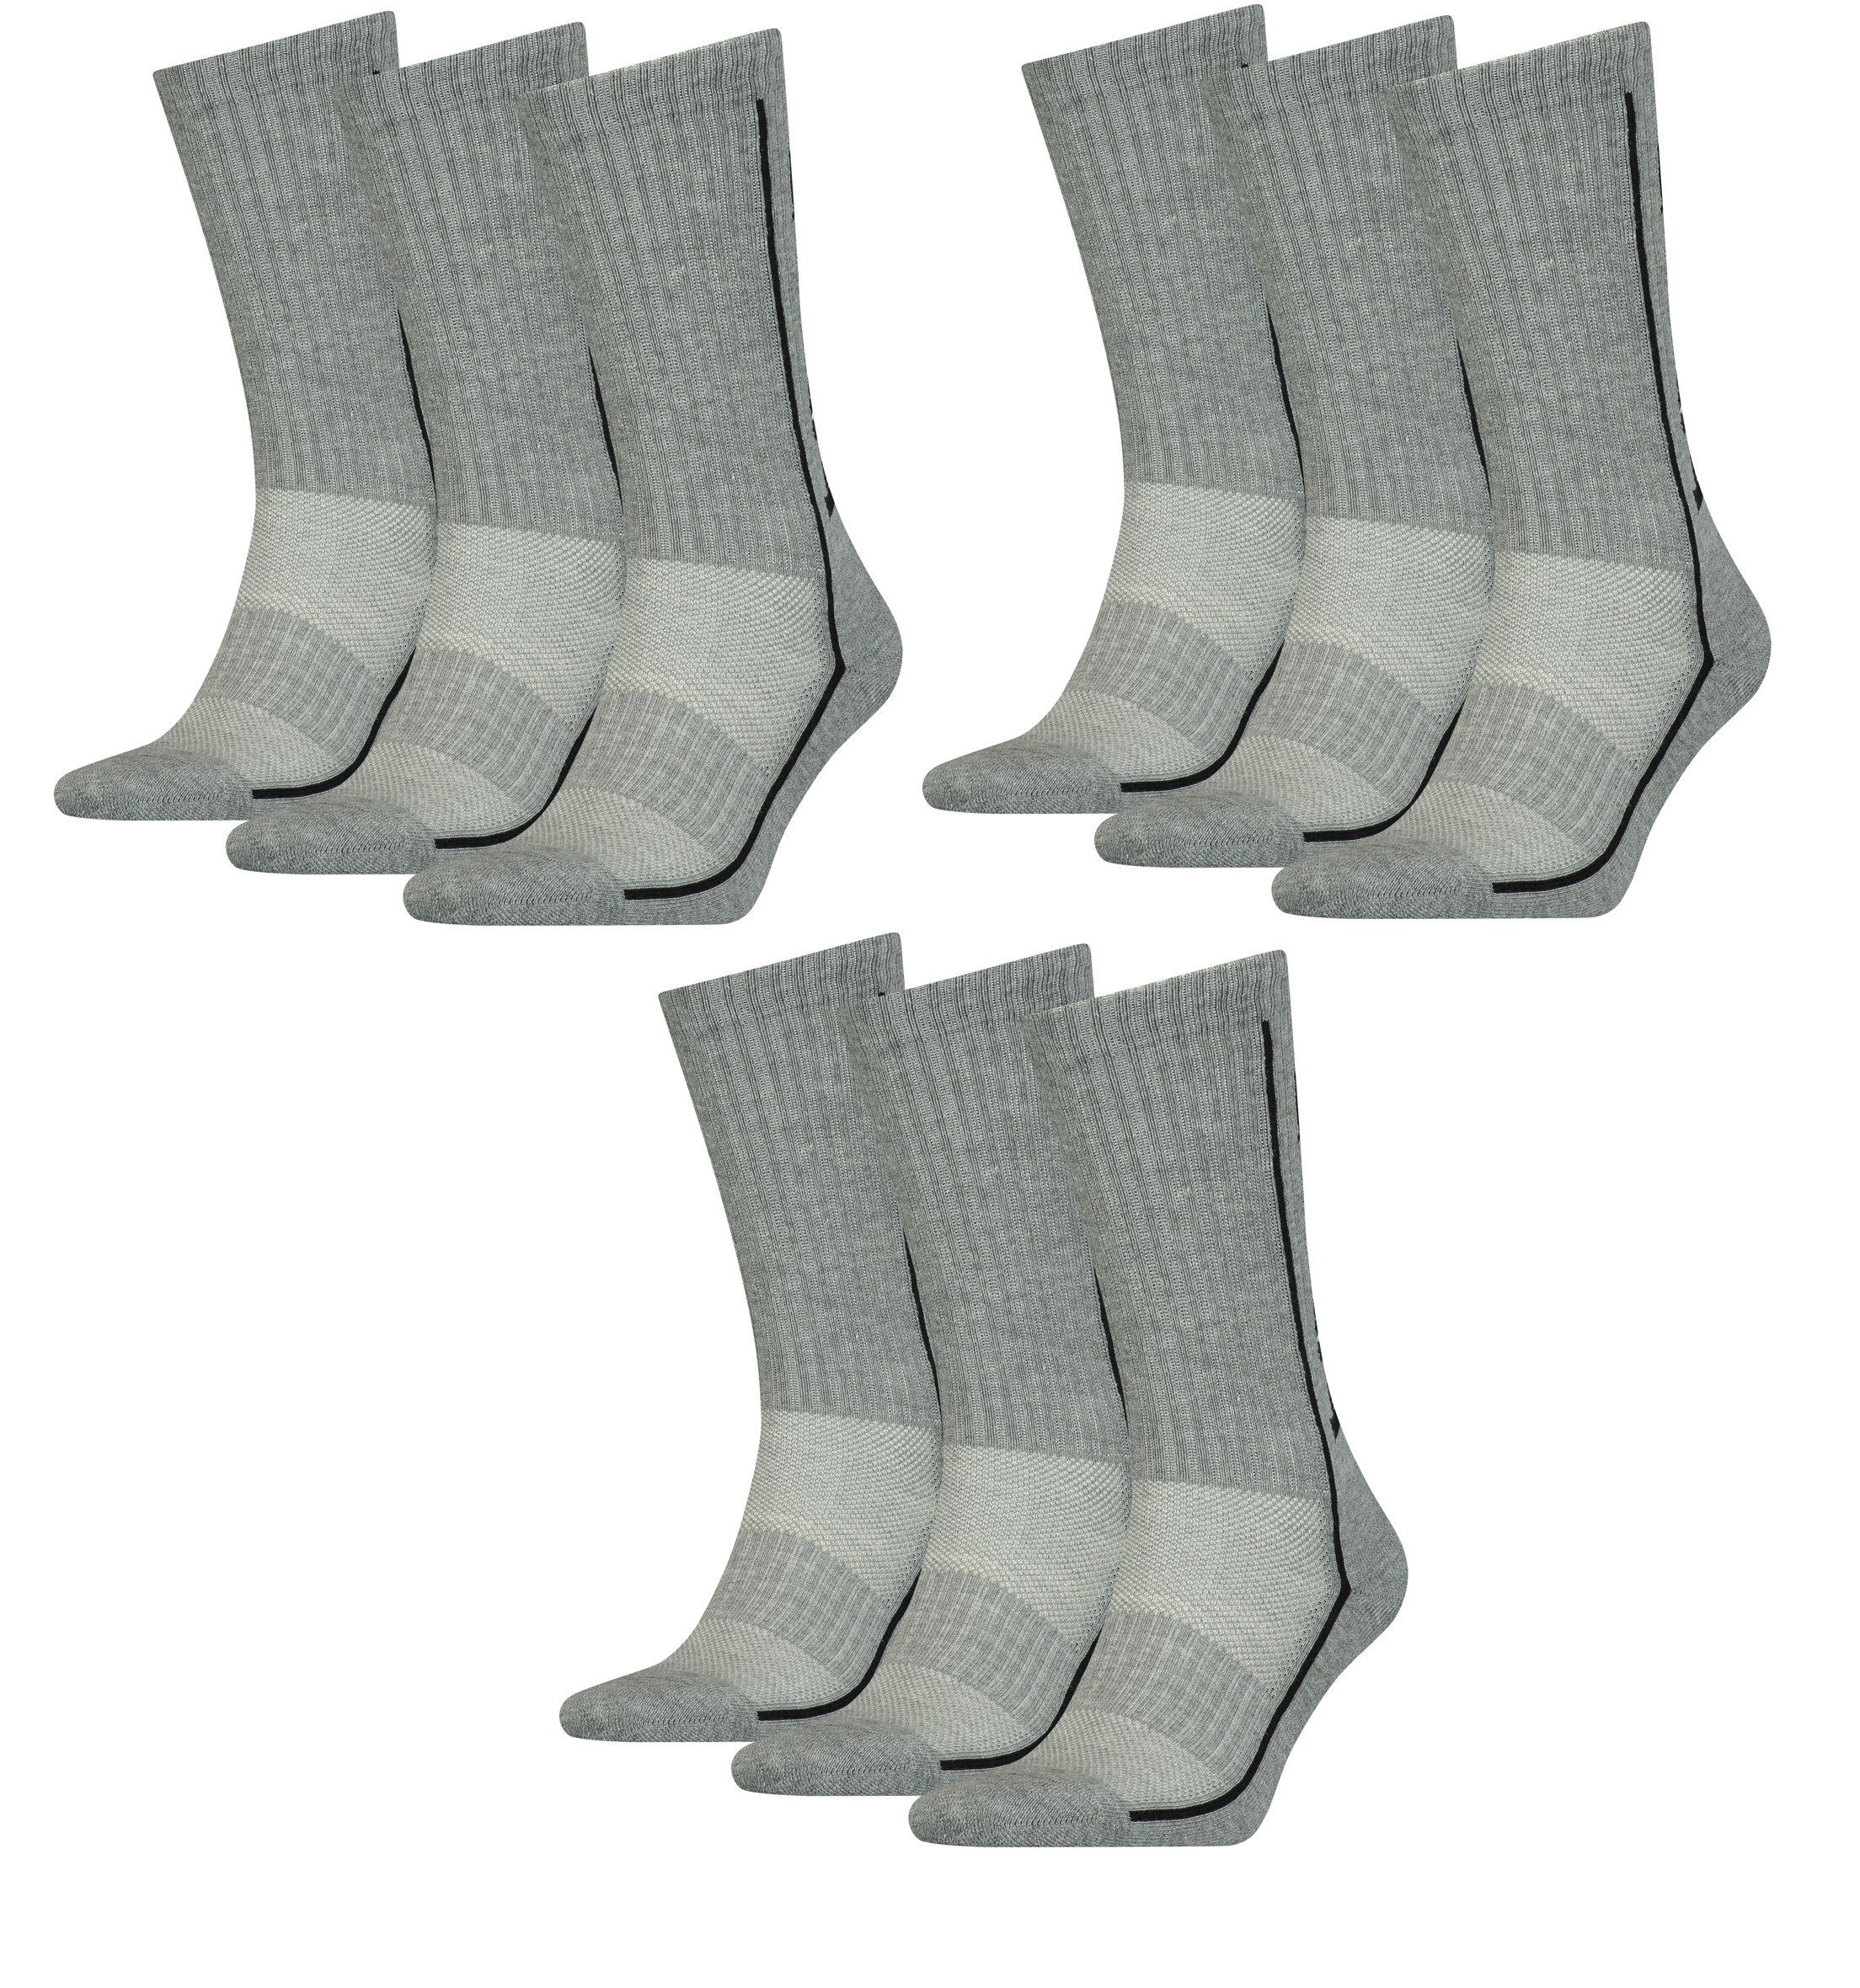 Head Freizeitsocken Head Sportsocken Performance Socken unisex 9er Pack (9 Paar) Polsterung im Fußbereich Grau